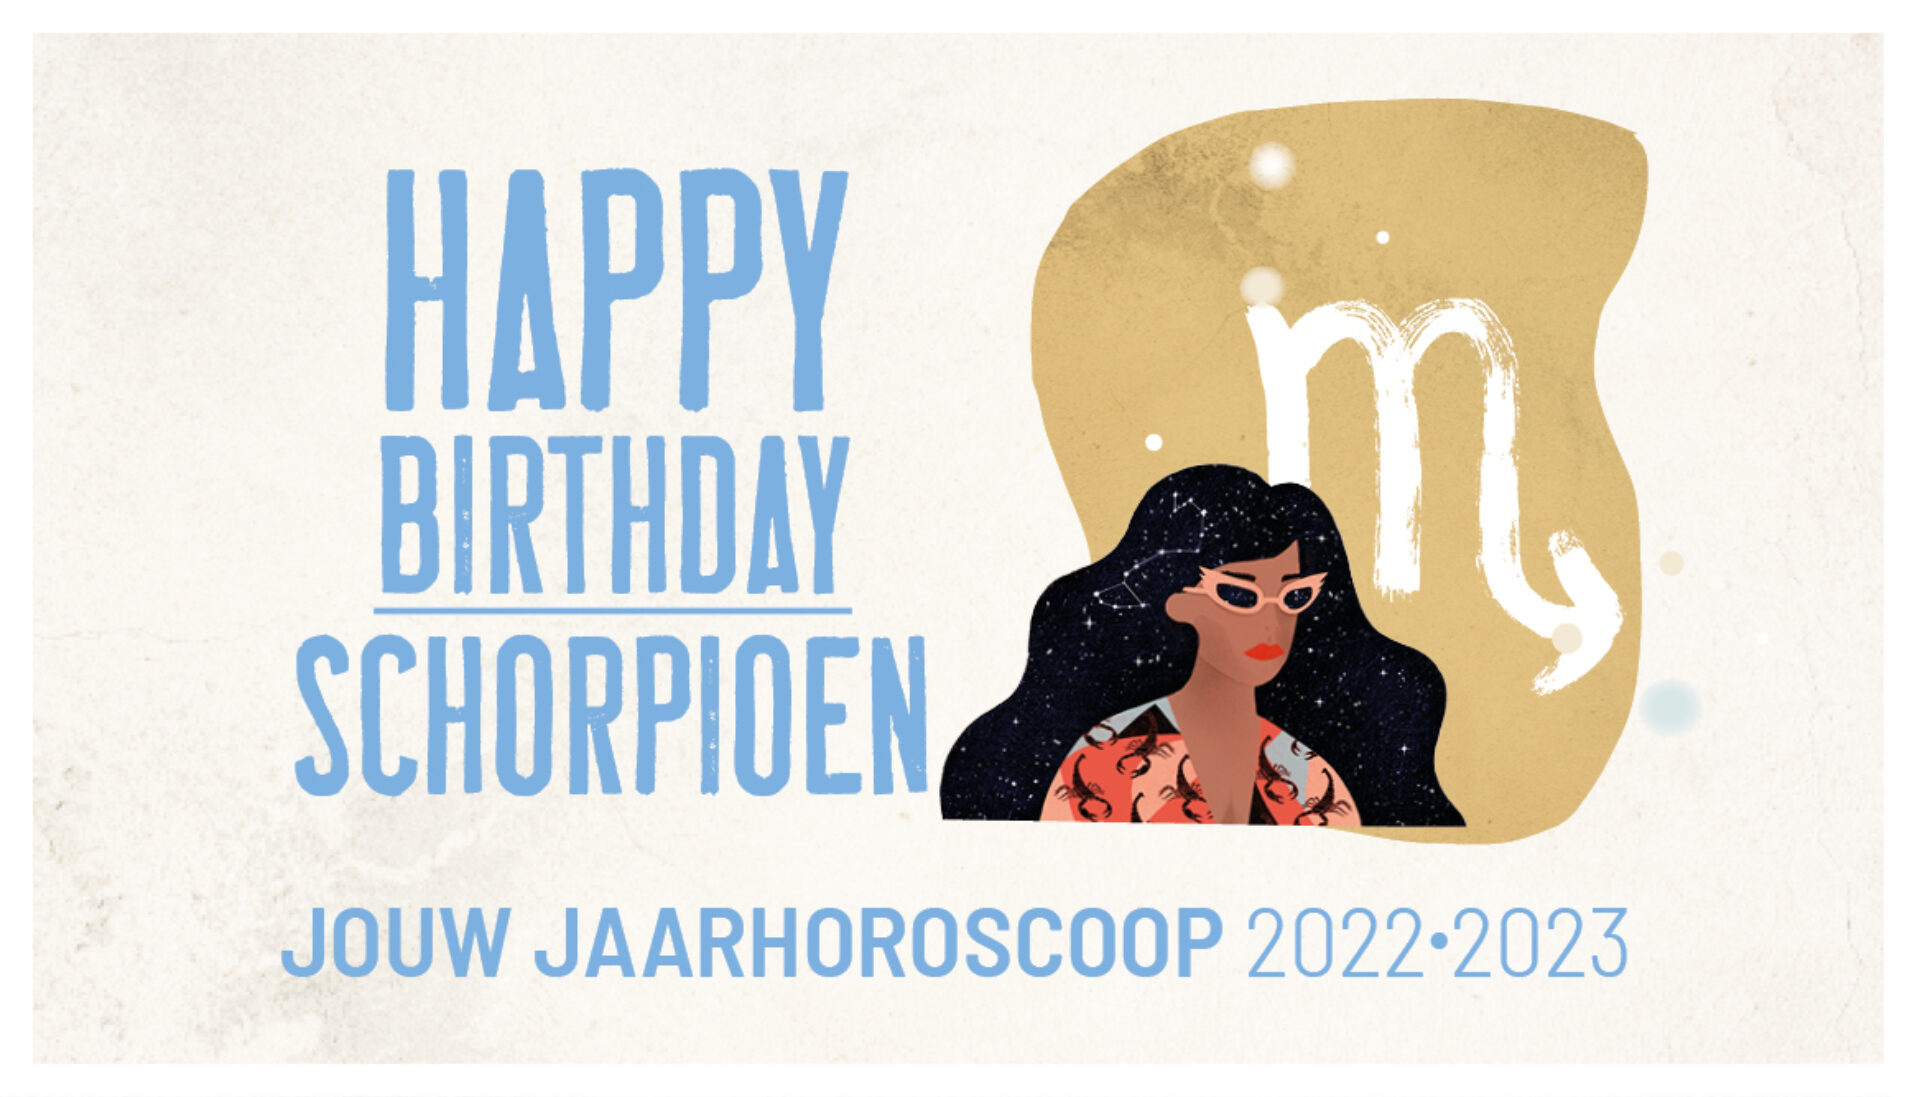 Schorpioen, jouw jaarhoroscoop 2022-2023: gelukkige verjaardag!